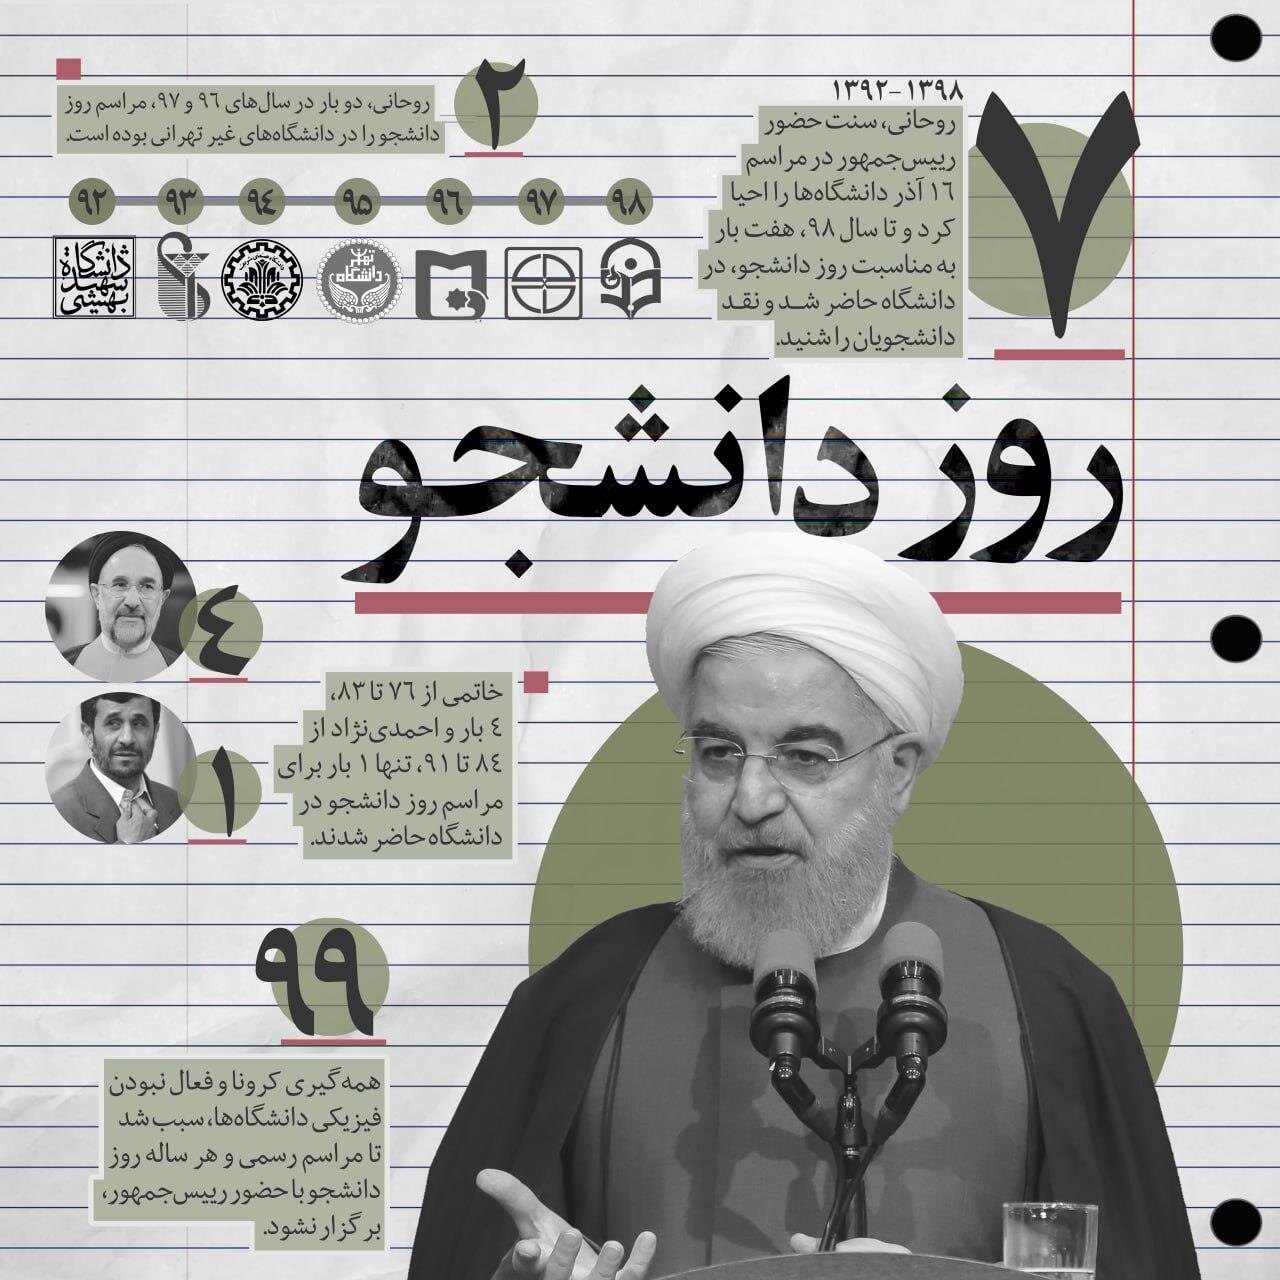 حسن روحانی پیشتاز شد /۷ بار حضور روحانی در دانشگاه در مقابل یکبار حضور احمدی نژاد /خاتمی ۴ بار به جمع دانشجوایان رفت +اینفو